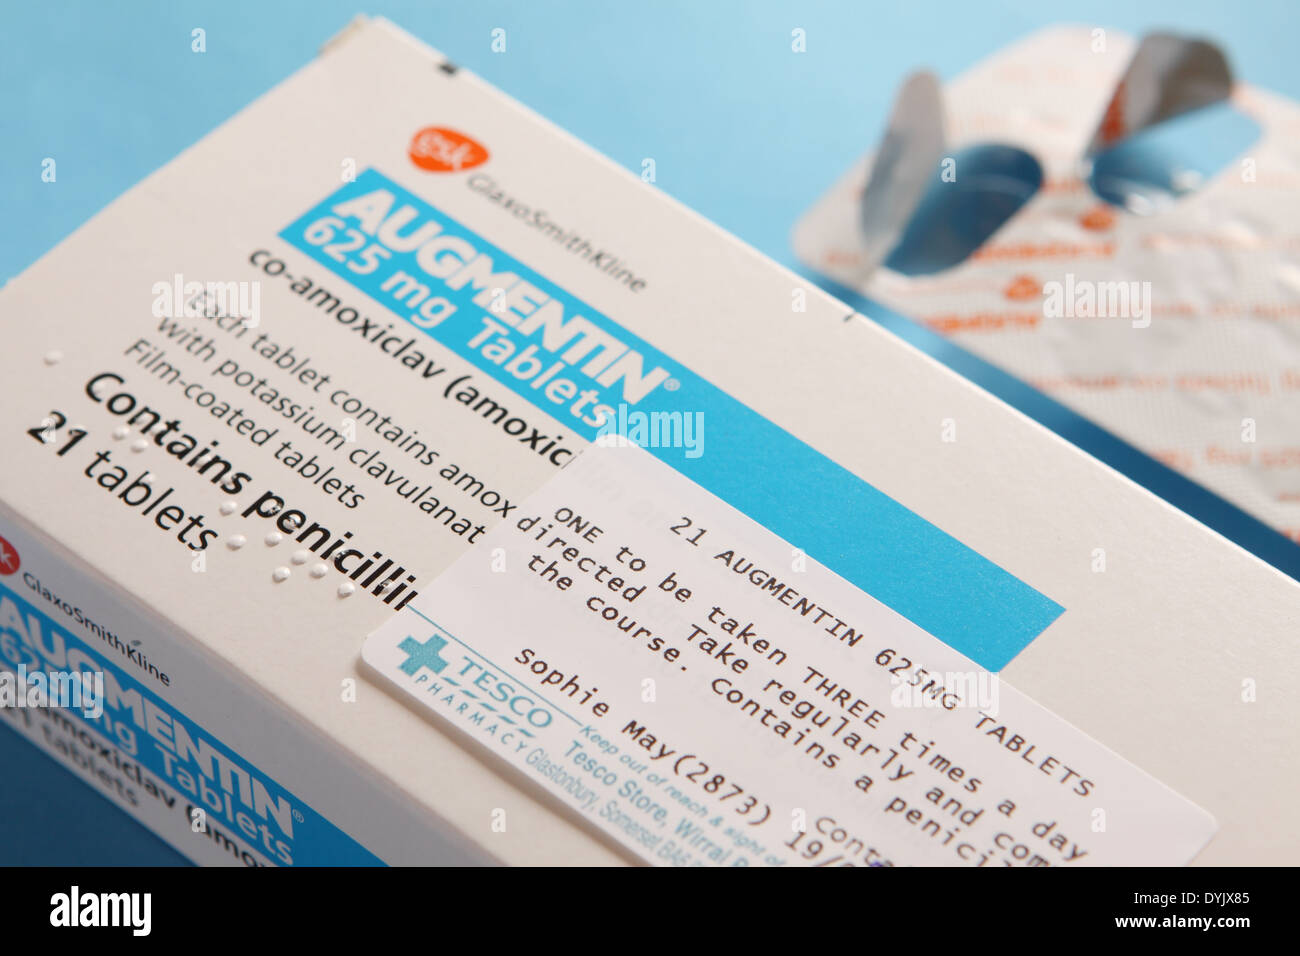 Augmentin antibiotico tablet Co-Amoxiclav pacchetto prodotto da GlaxoSmithKline contiene penicillina Foto Stock